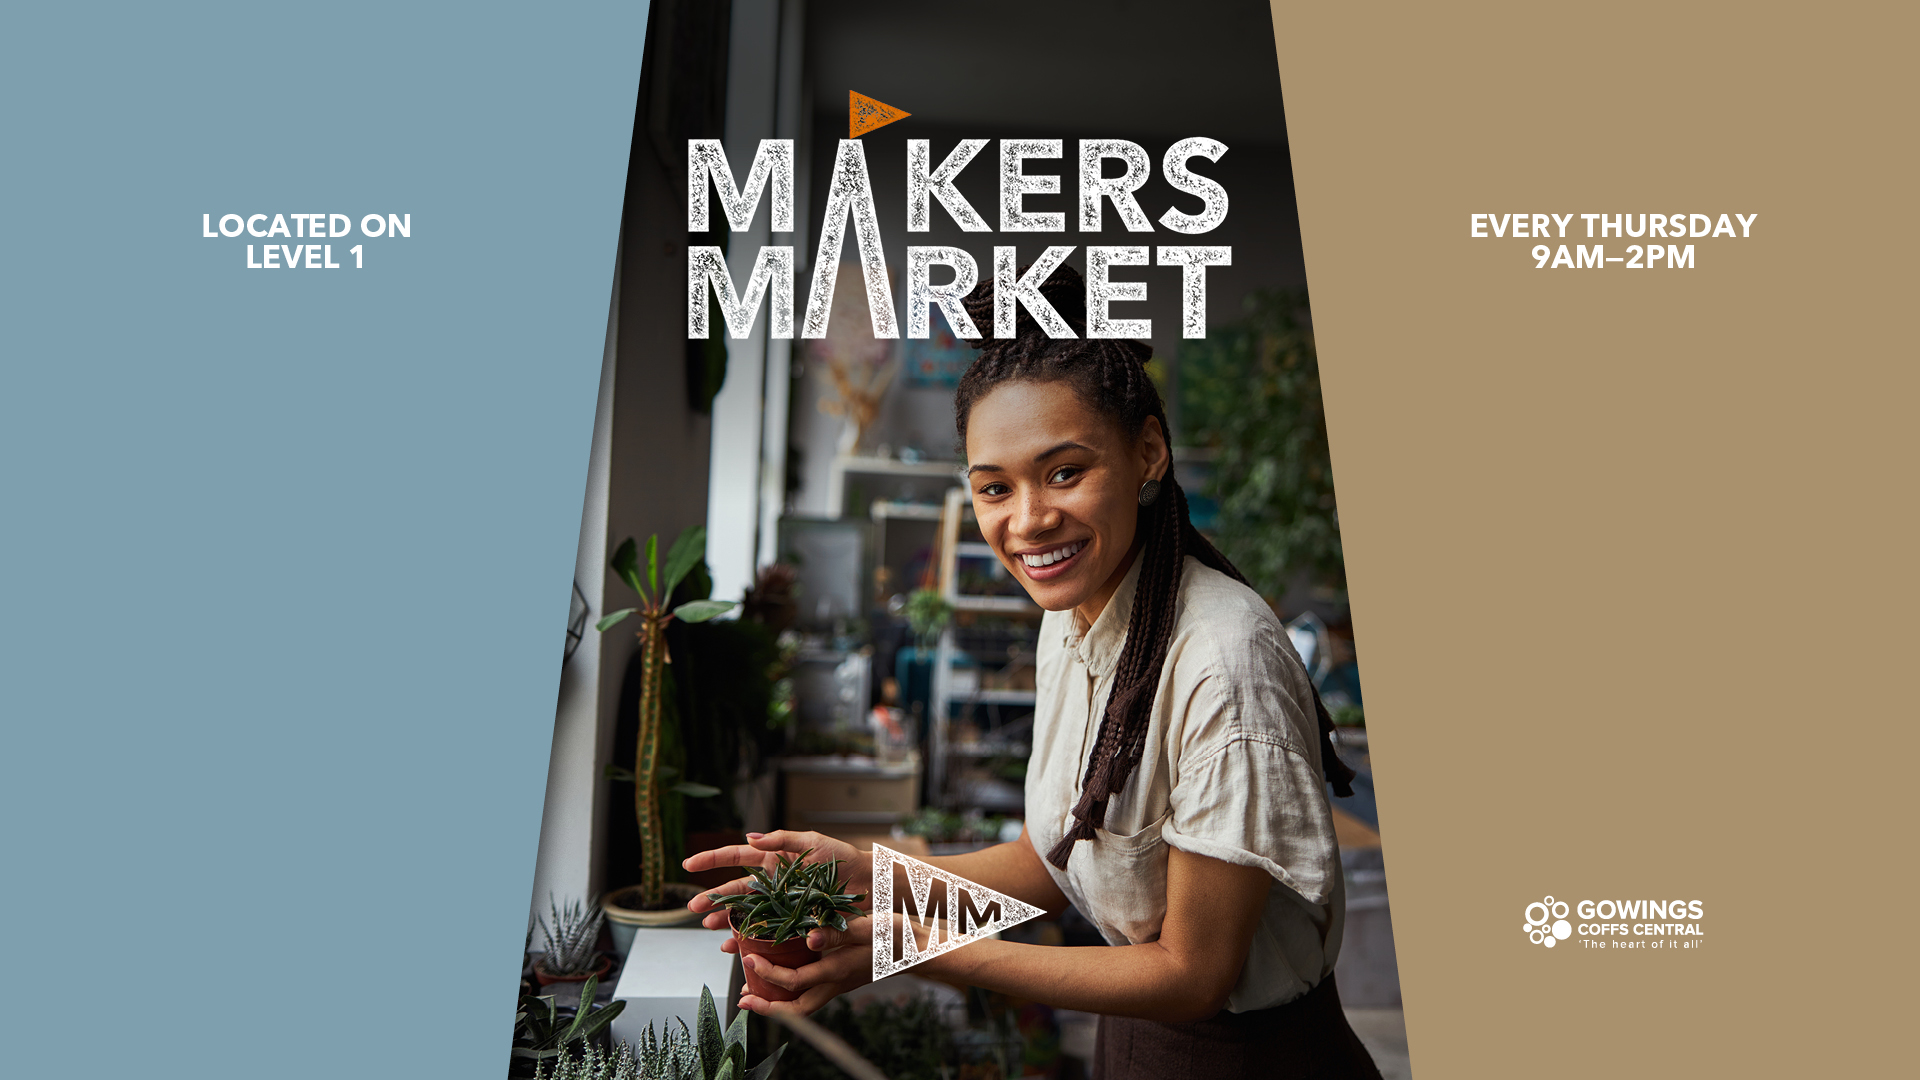 Maker's Market Image